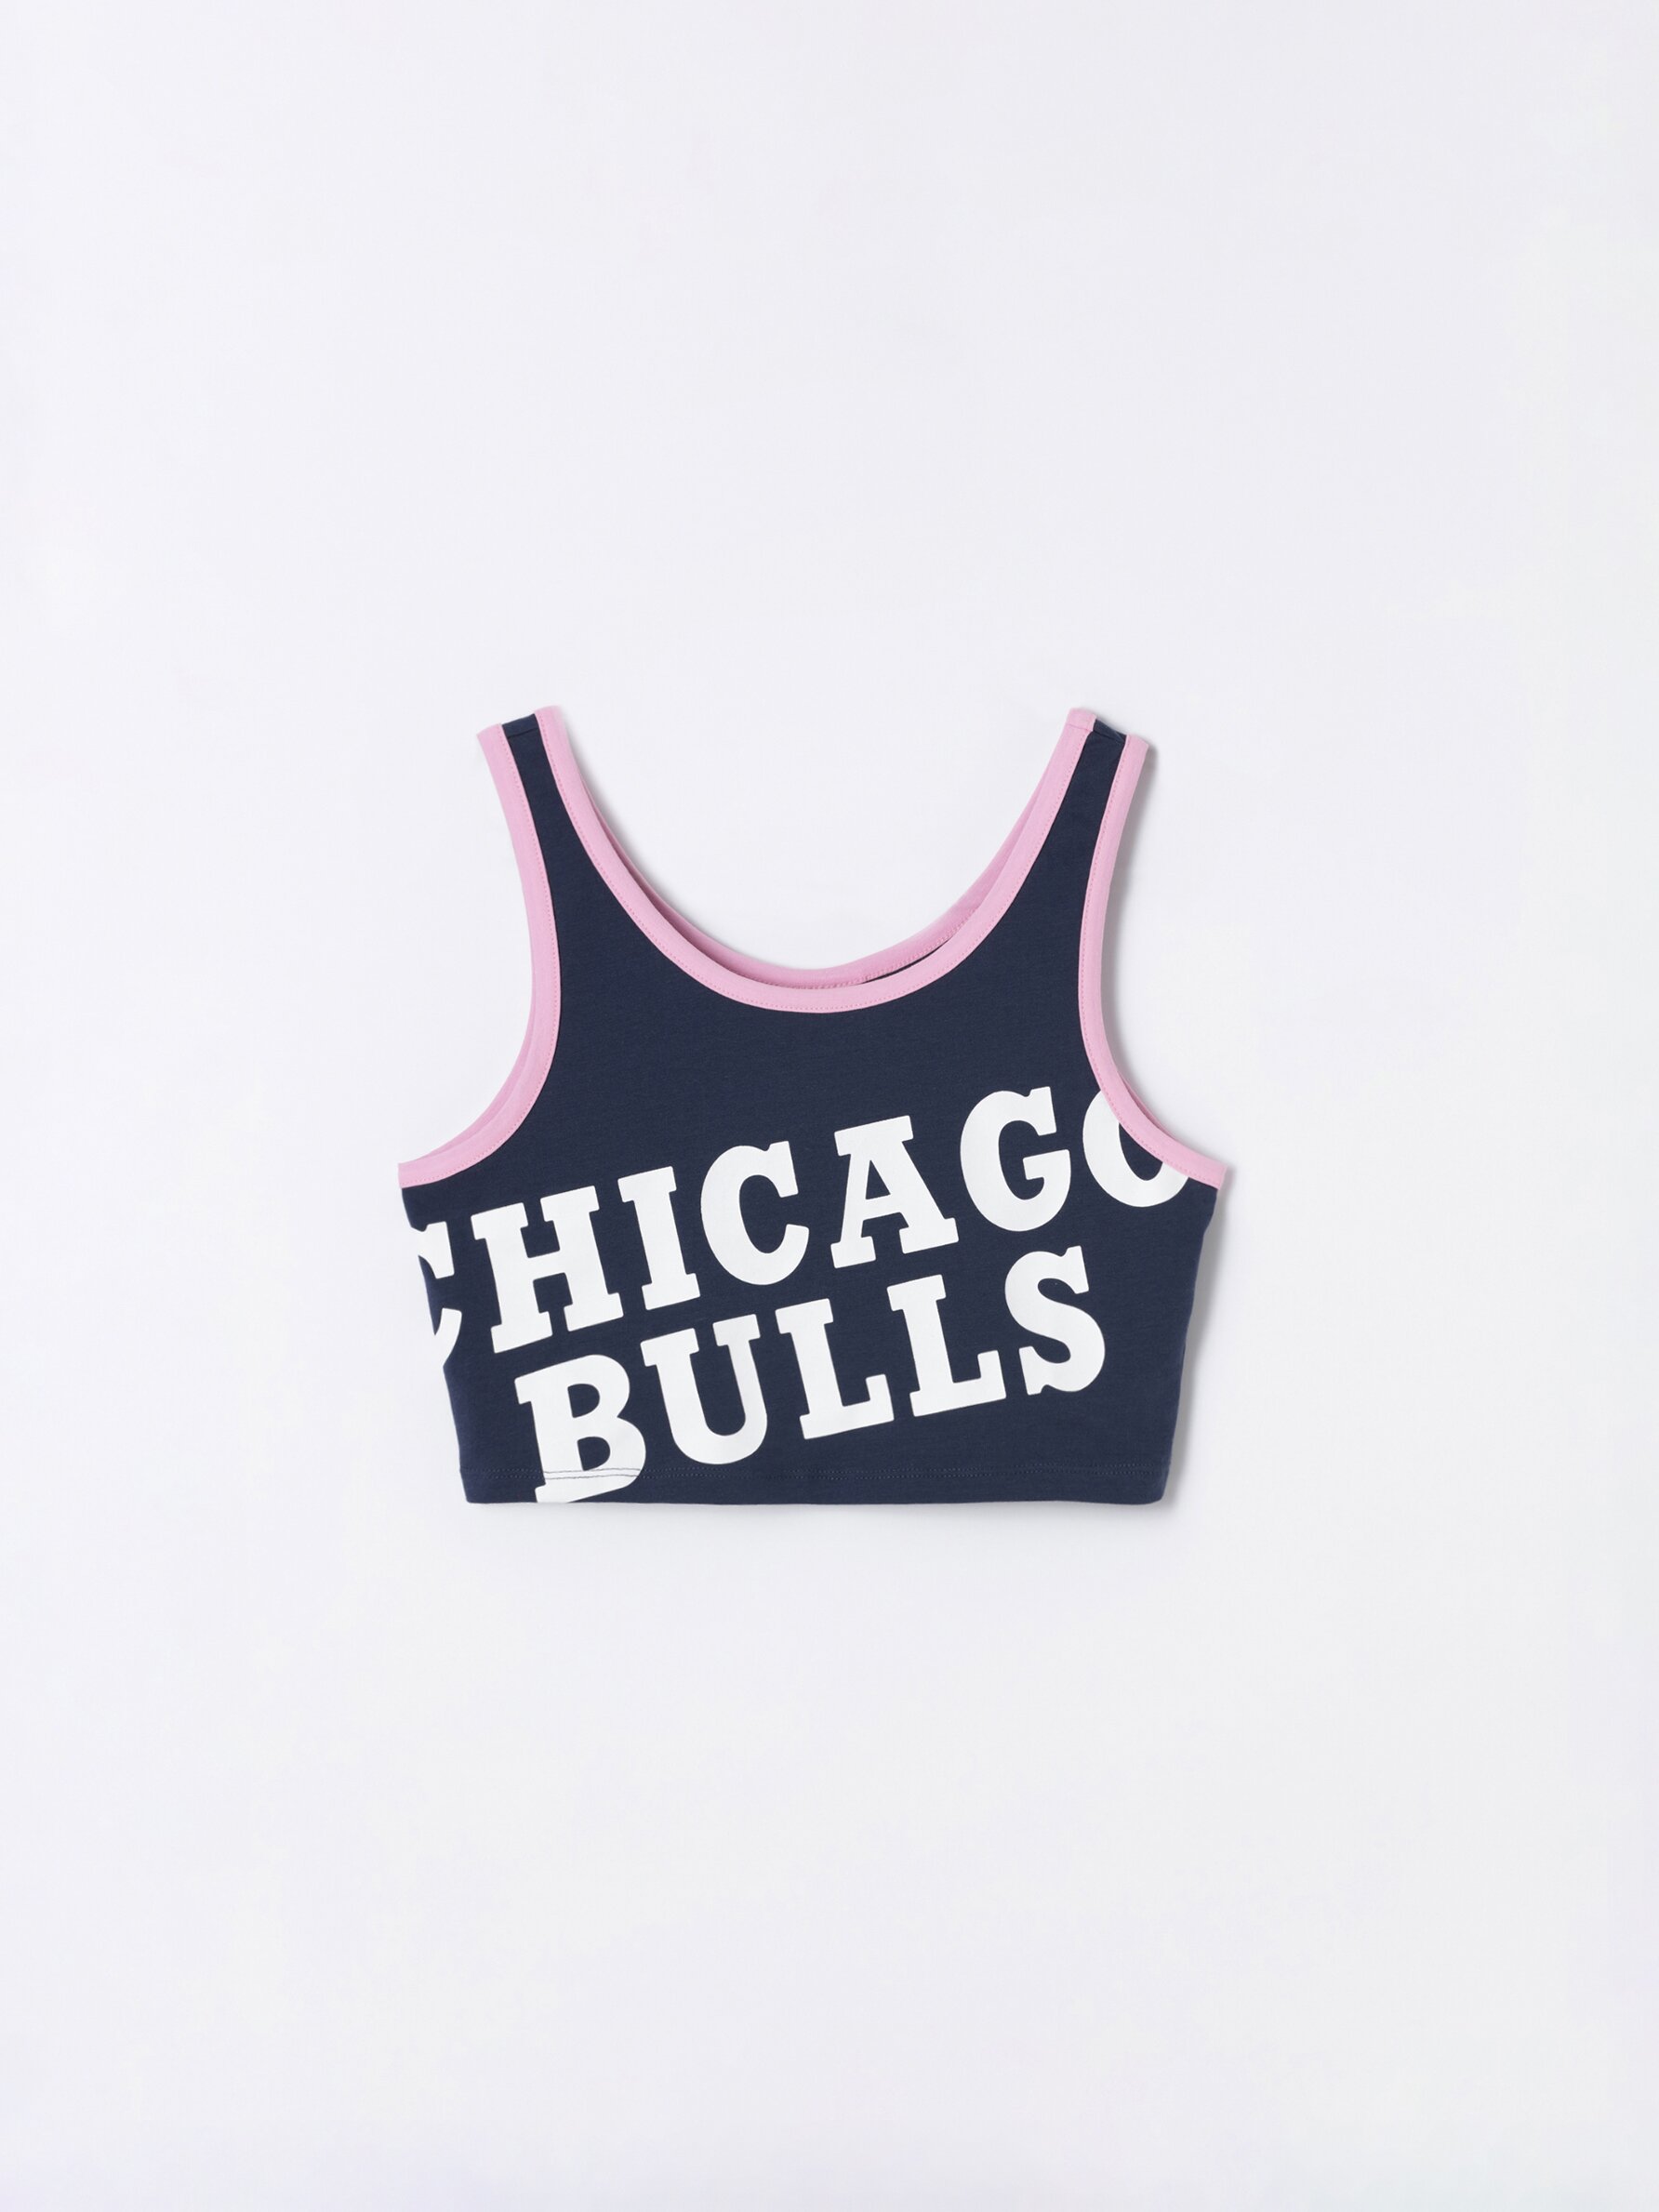 women's chicago bulls top